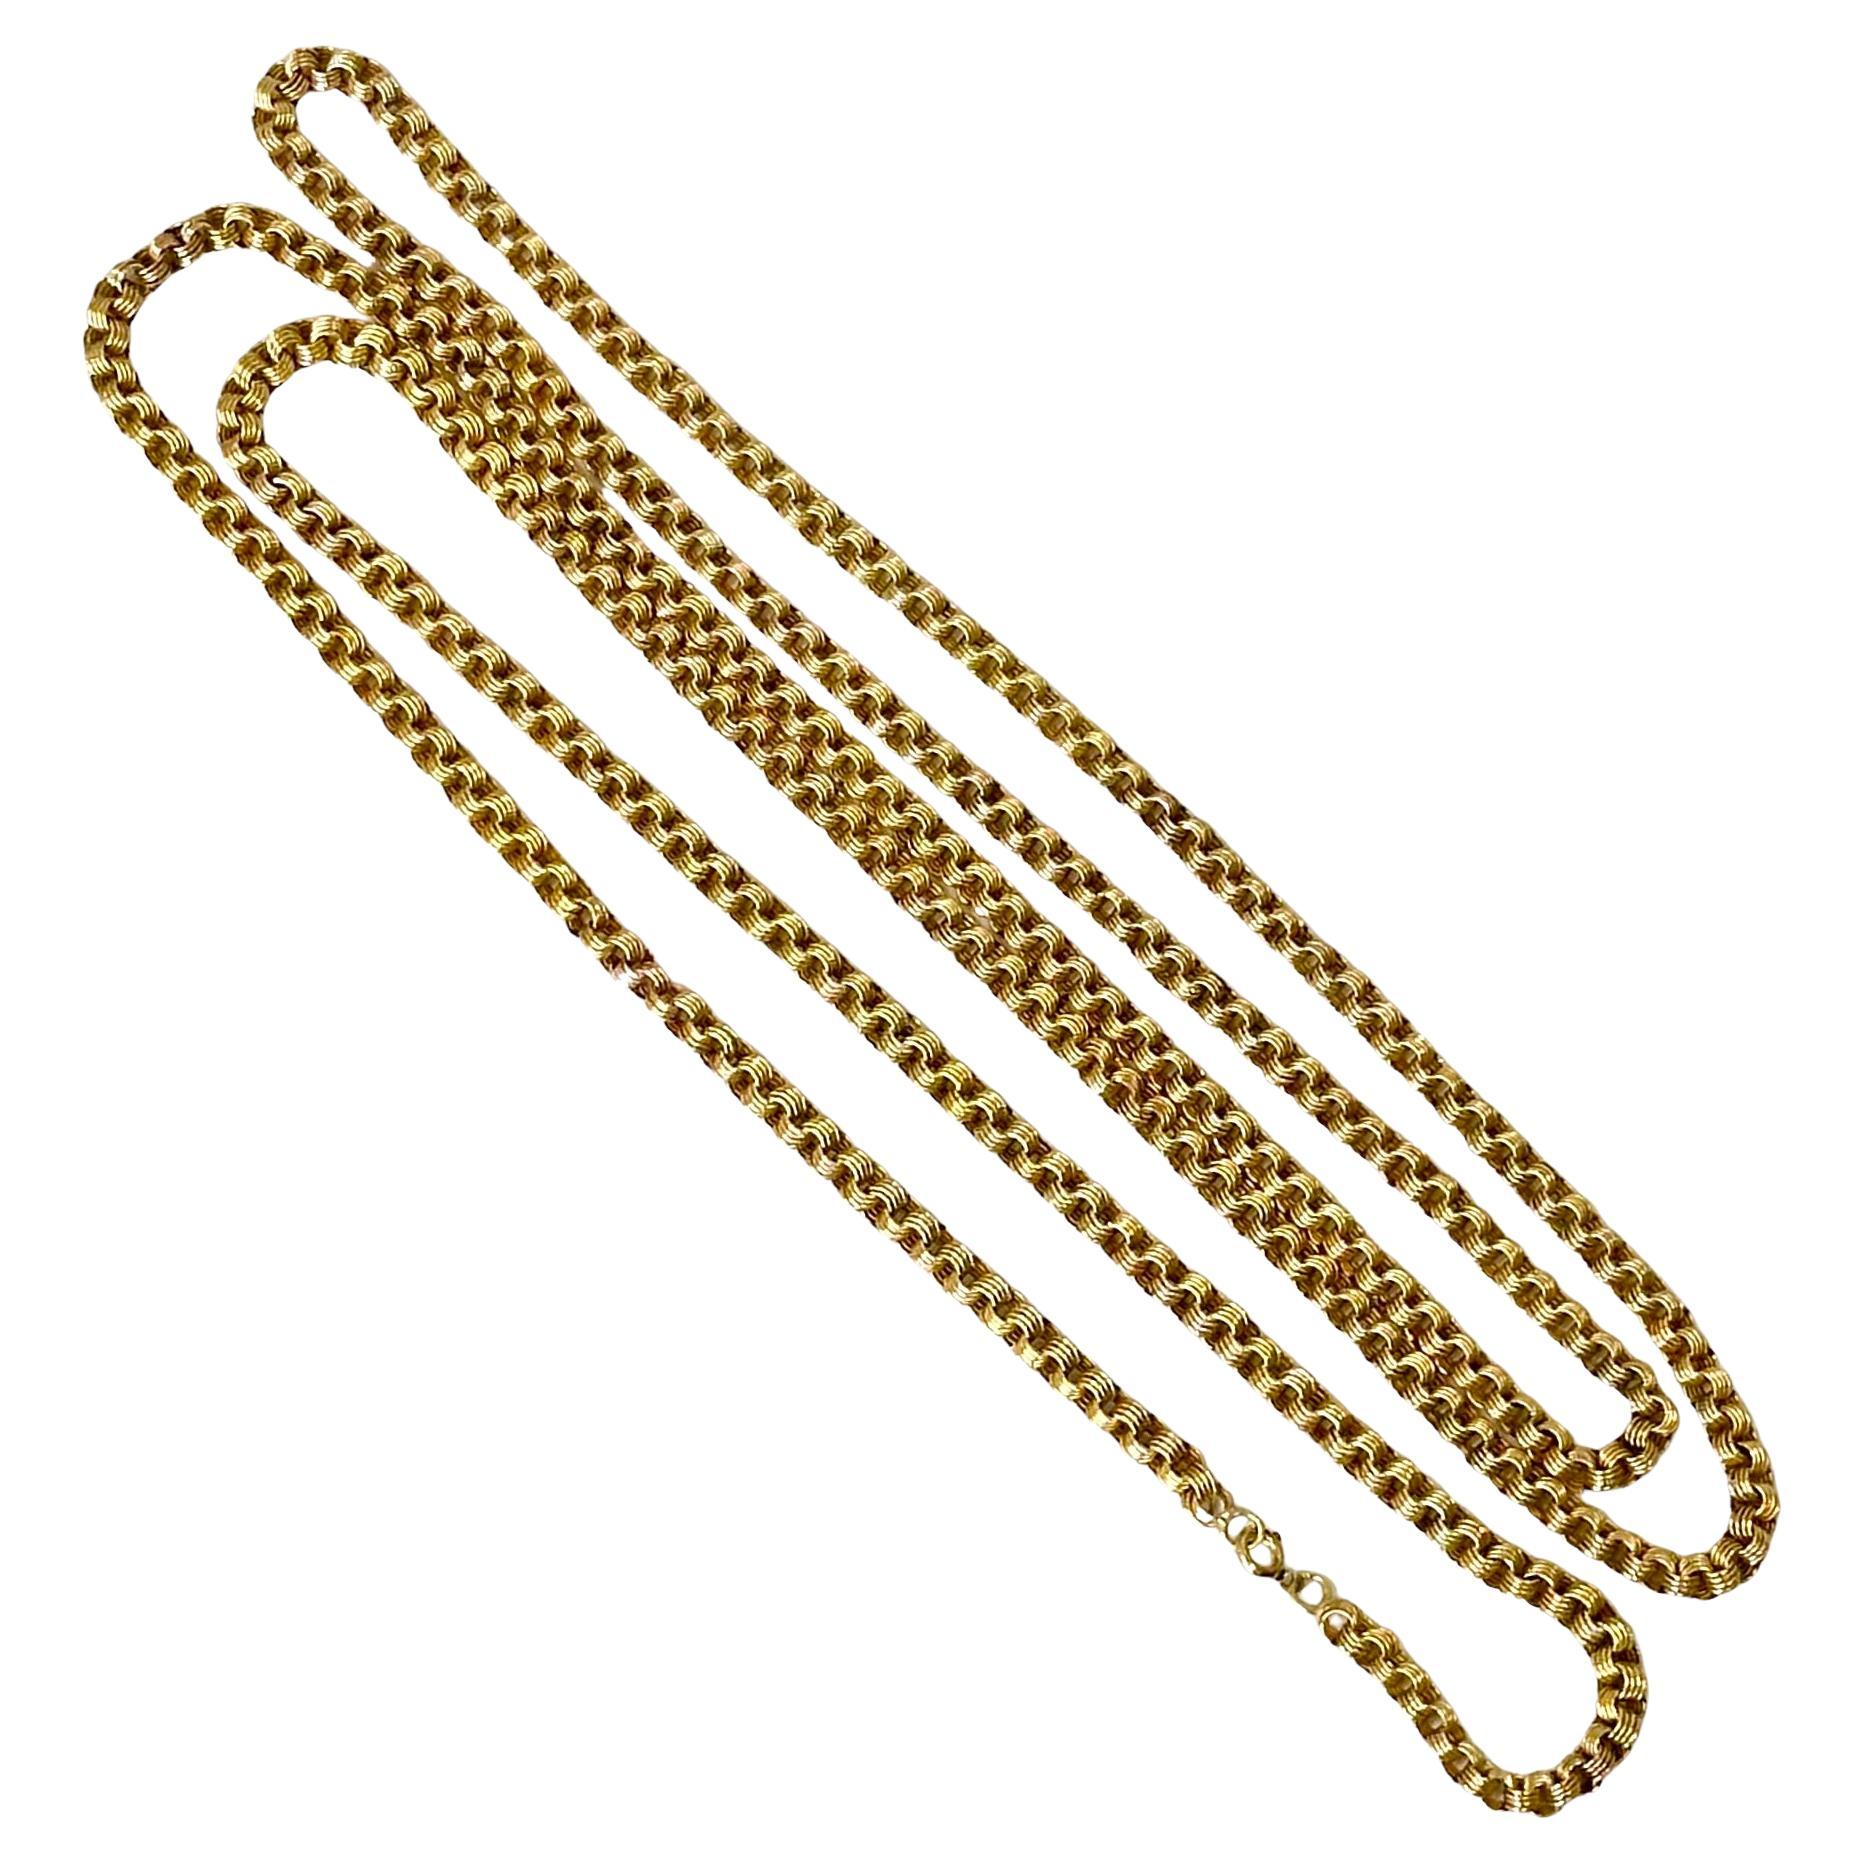 D'une longueur de 58 pouces, cette chaîne de cou en or jaune 14k du début du 20e siècle, réalisée par des experts, peut être portée dans différentes configurations : en une seule longue longueur continue, doublée ou même triplée autour du cou.